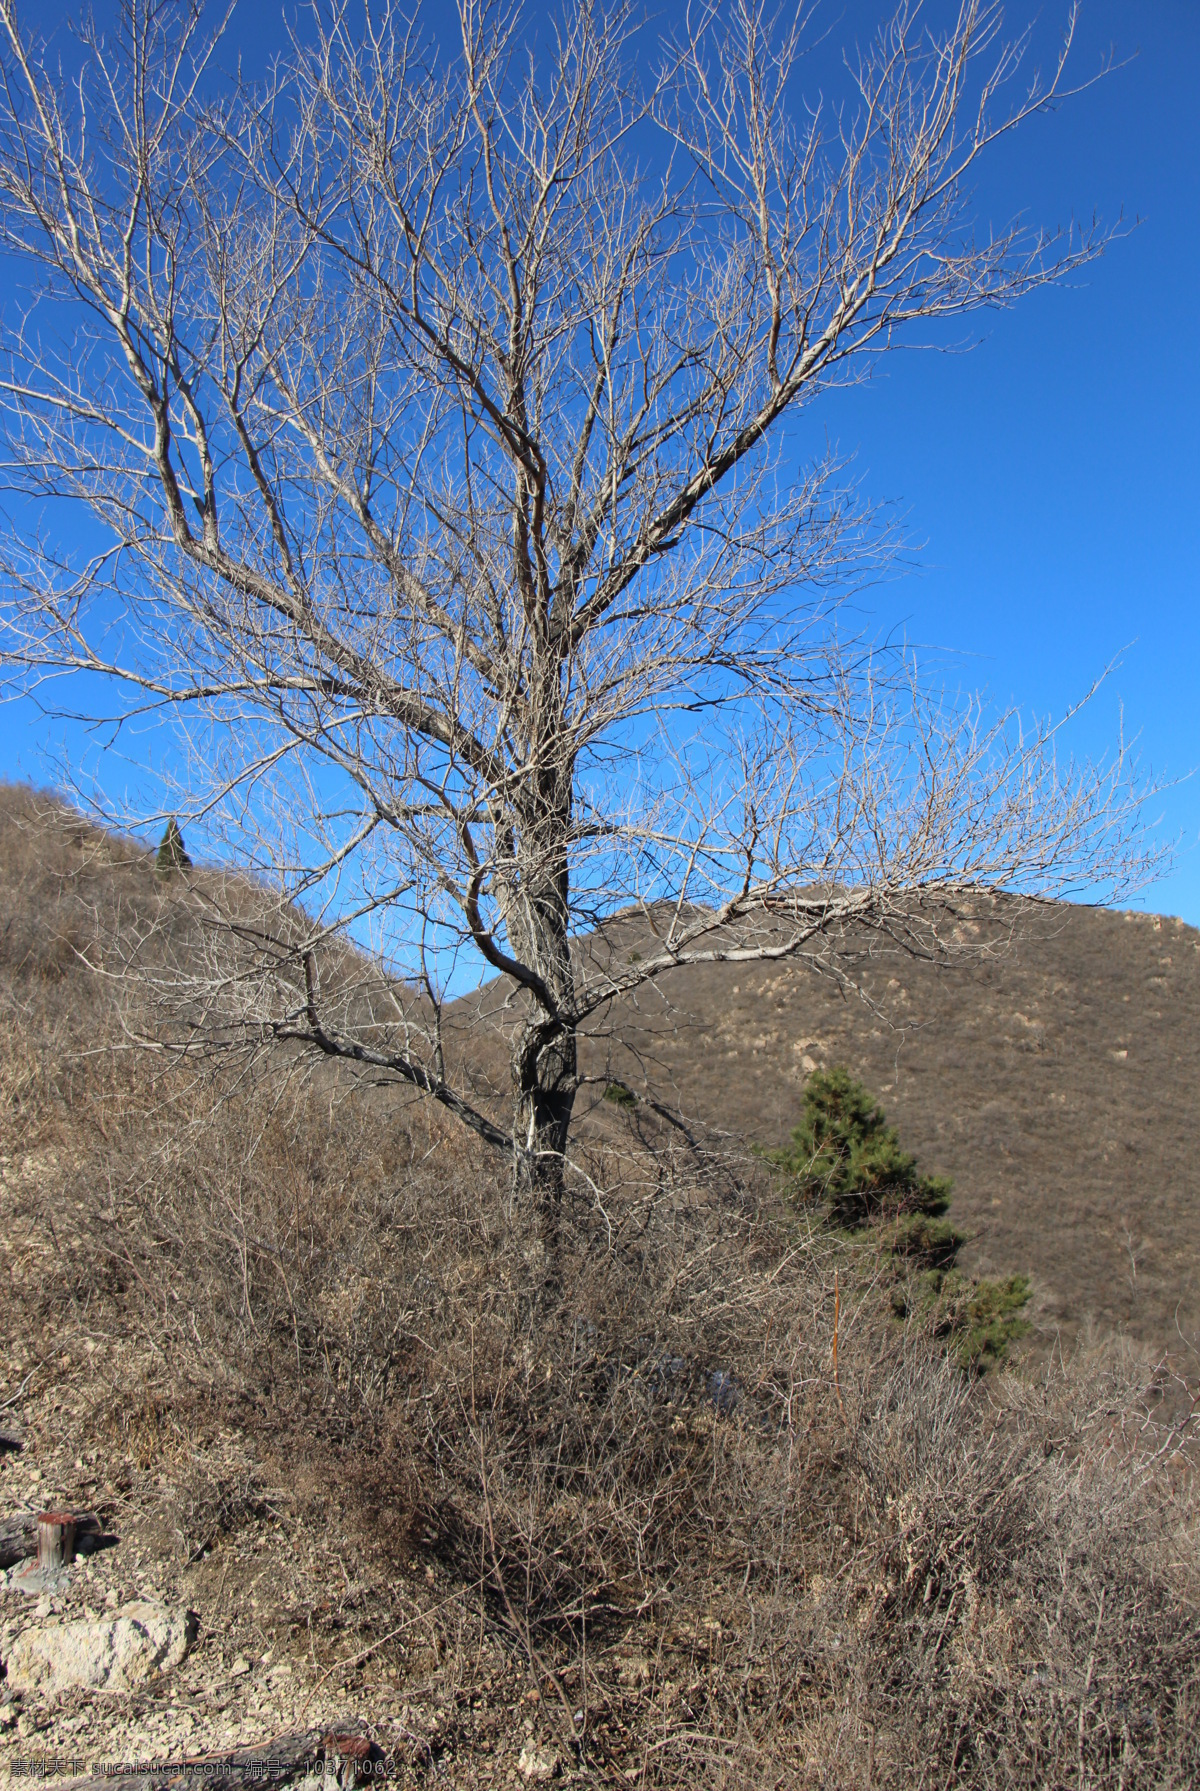 孤树图片 冬山 孤树 蓝天 荒草 枯黄 舞彩浅山 舞 彩 浅山 登山 步道 旅游摄影 自然风景